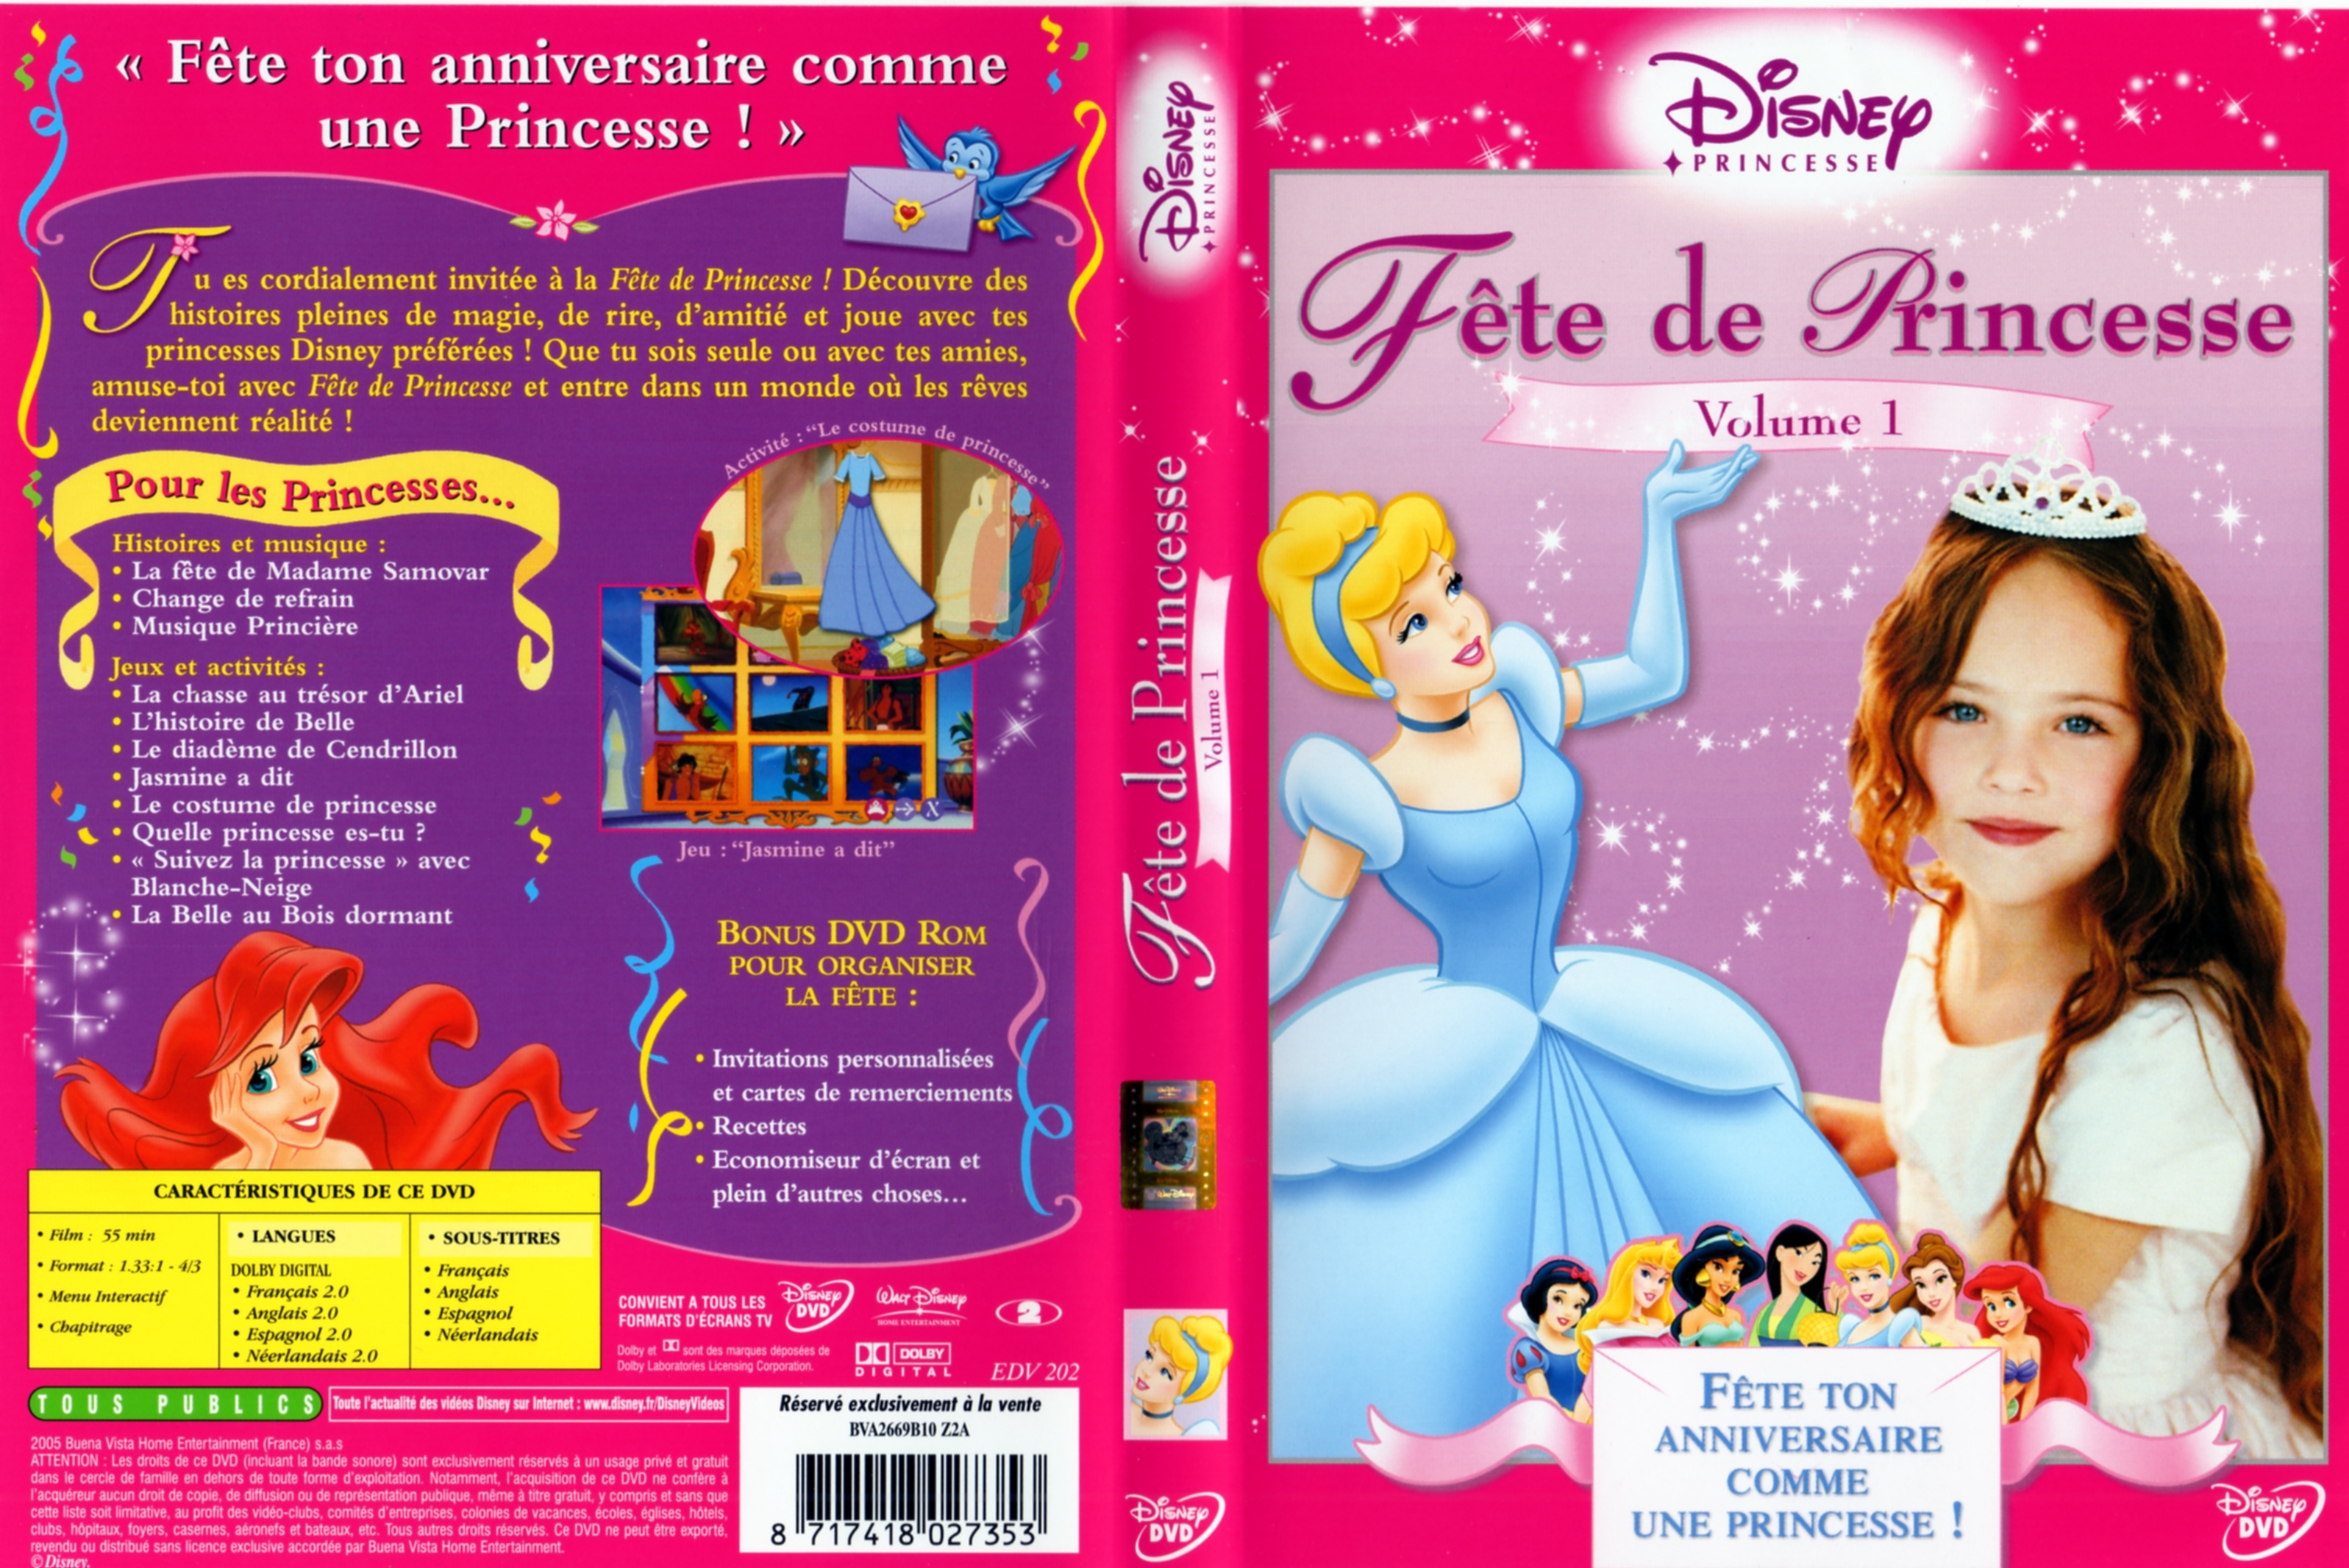 Jaquette DVD Fete de Princesse vol 1